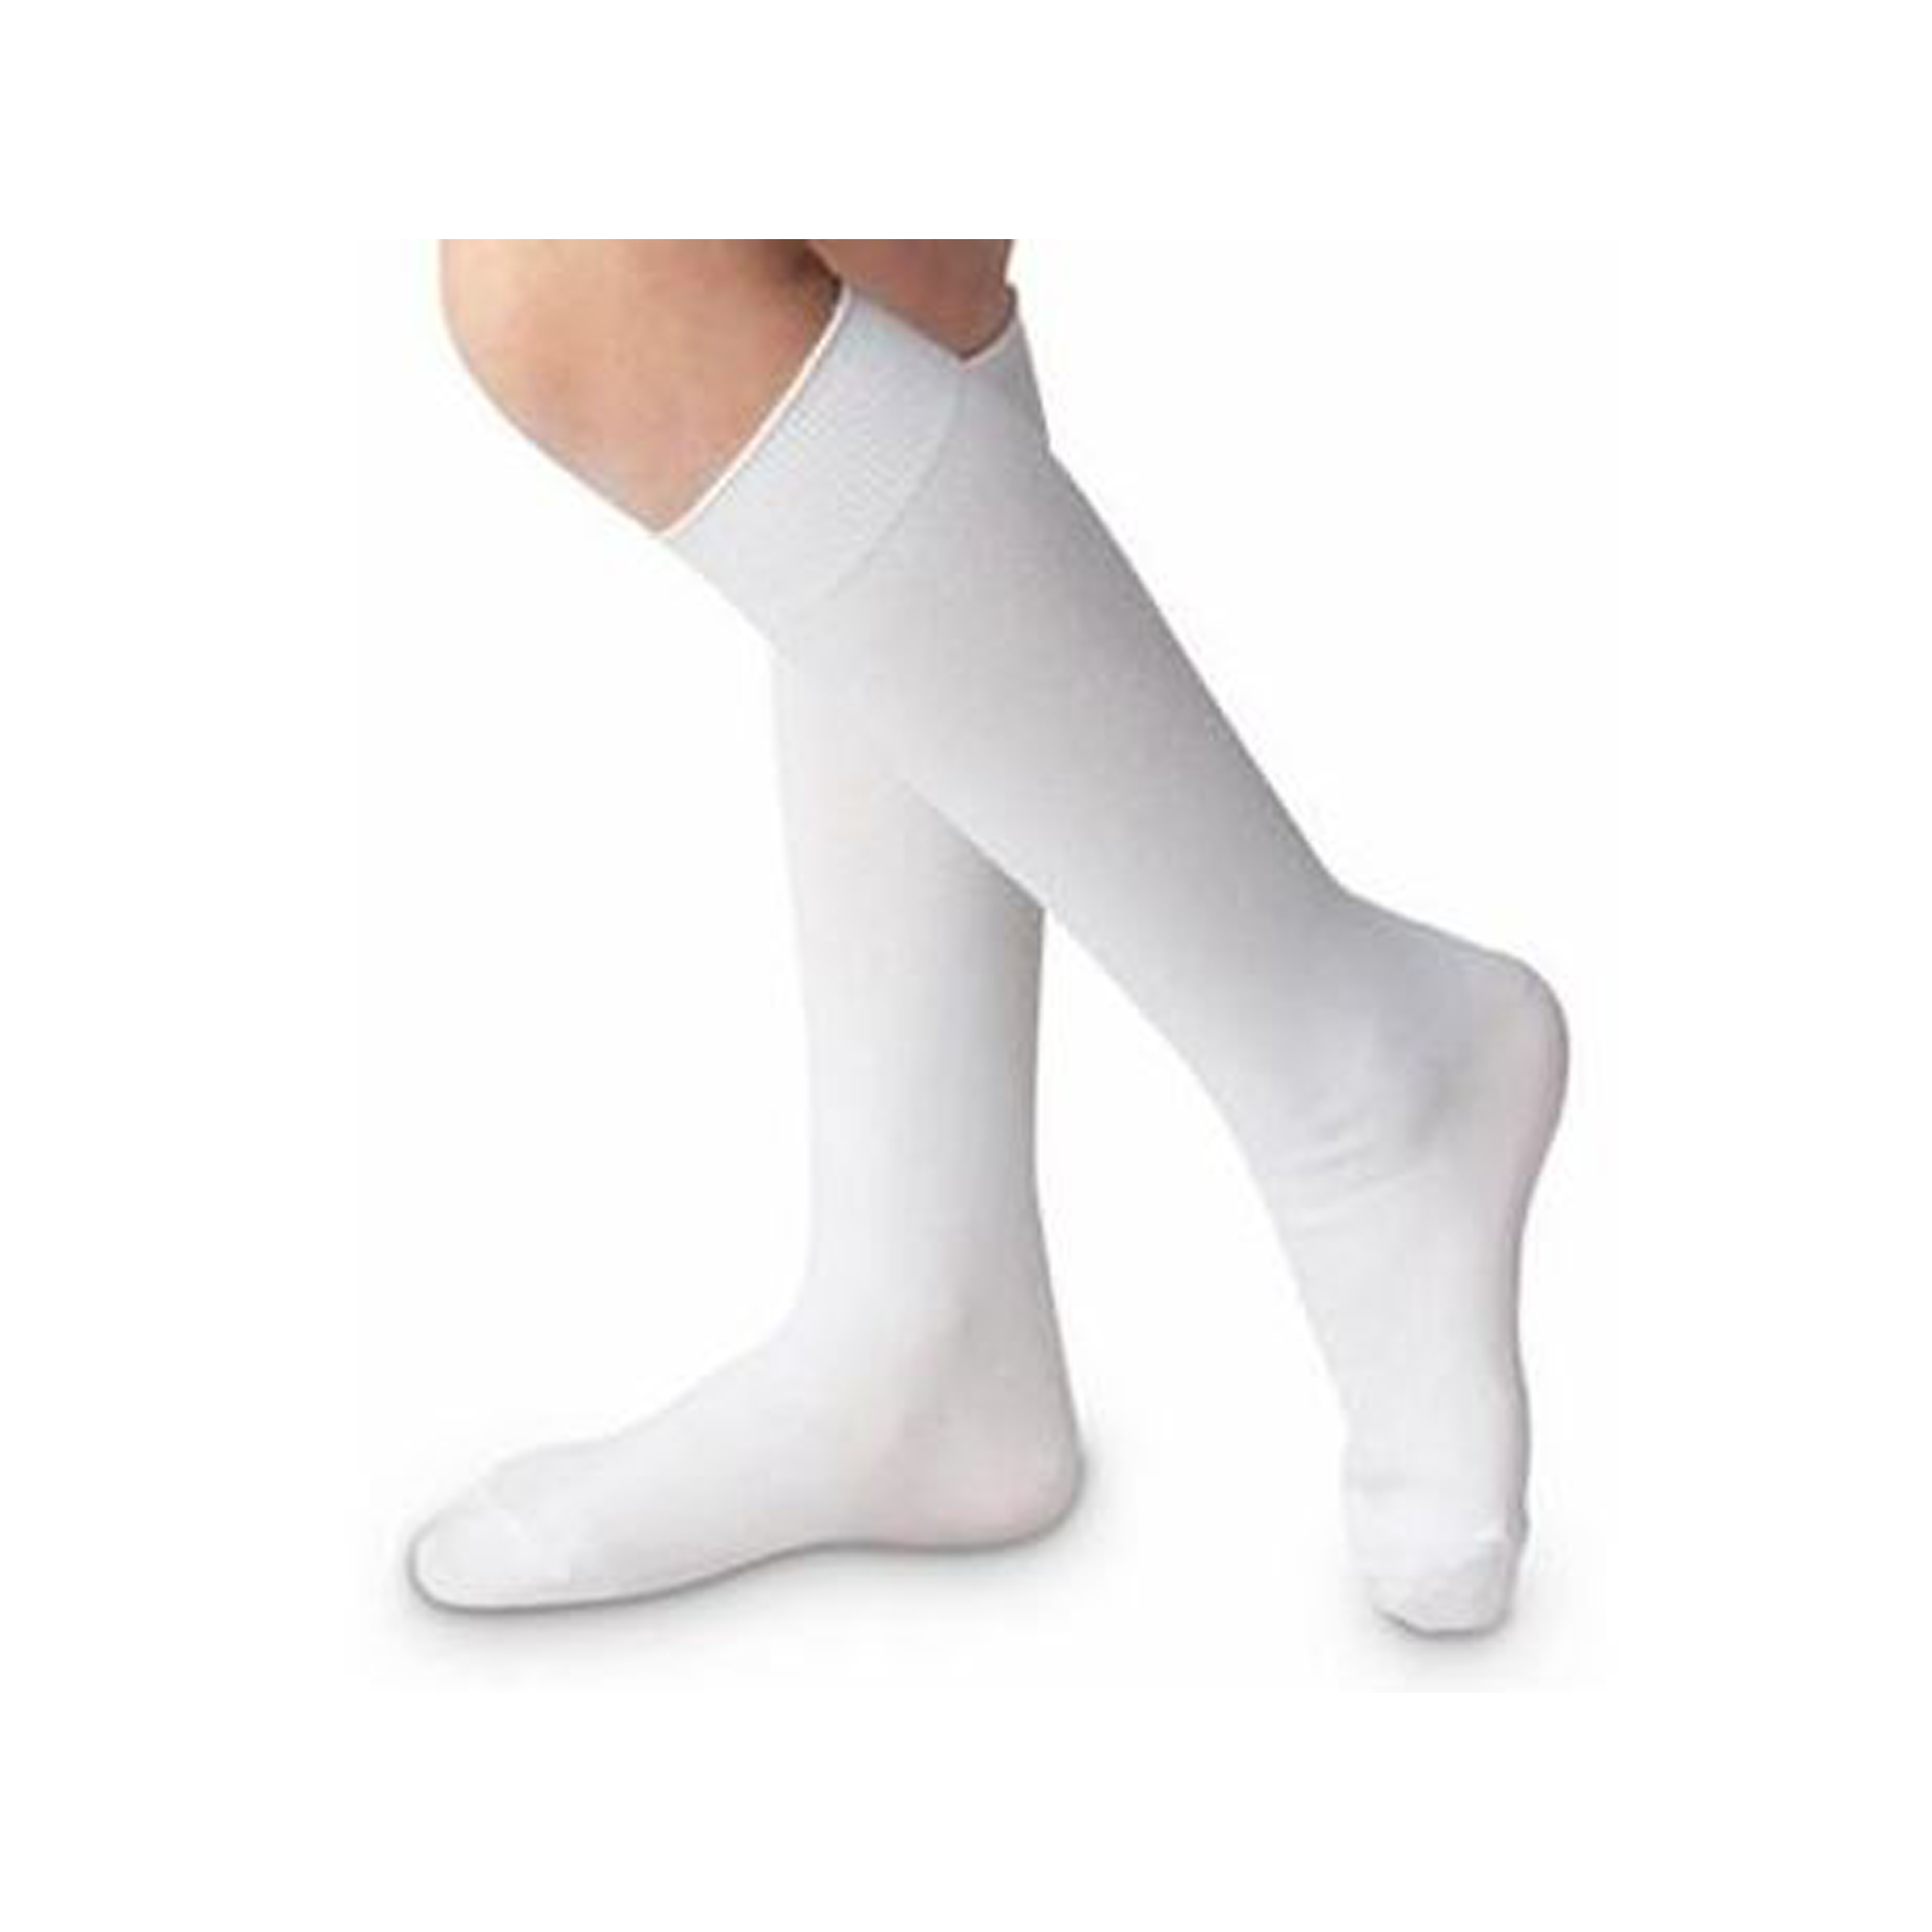 Nylon Knee High Socks (Unisex)